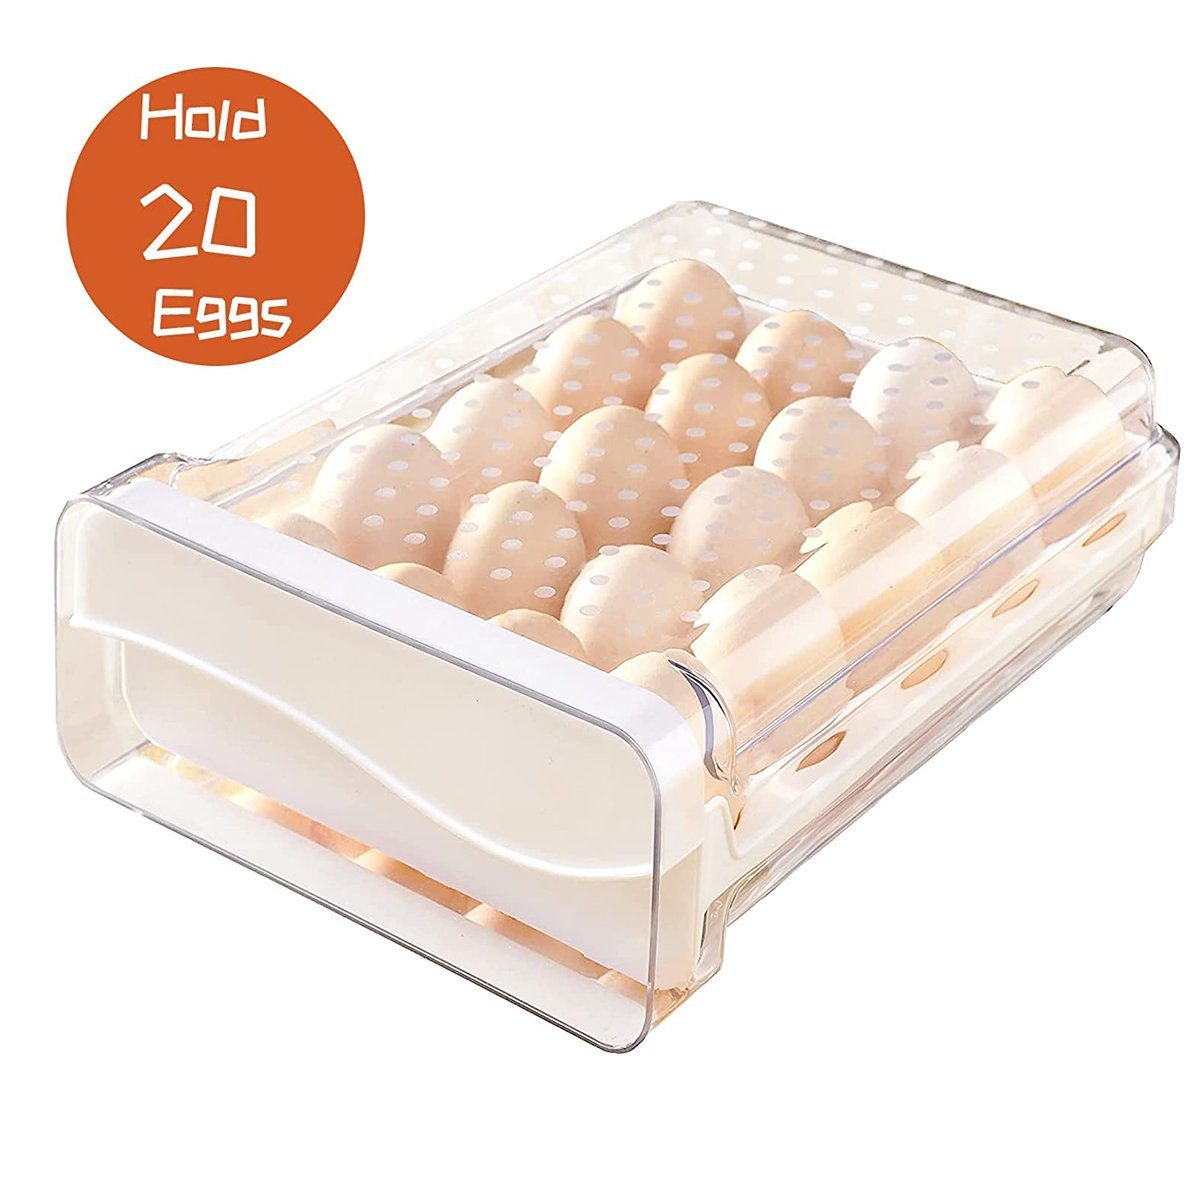 XDeer Eierkorb Eierbox Eierbehälter 20 Eier für Kühlschrank, Eierschublade, Stapelbar Durchsichtig Eierhalter zur Frischhalten von Eiern